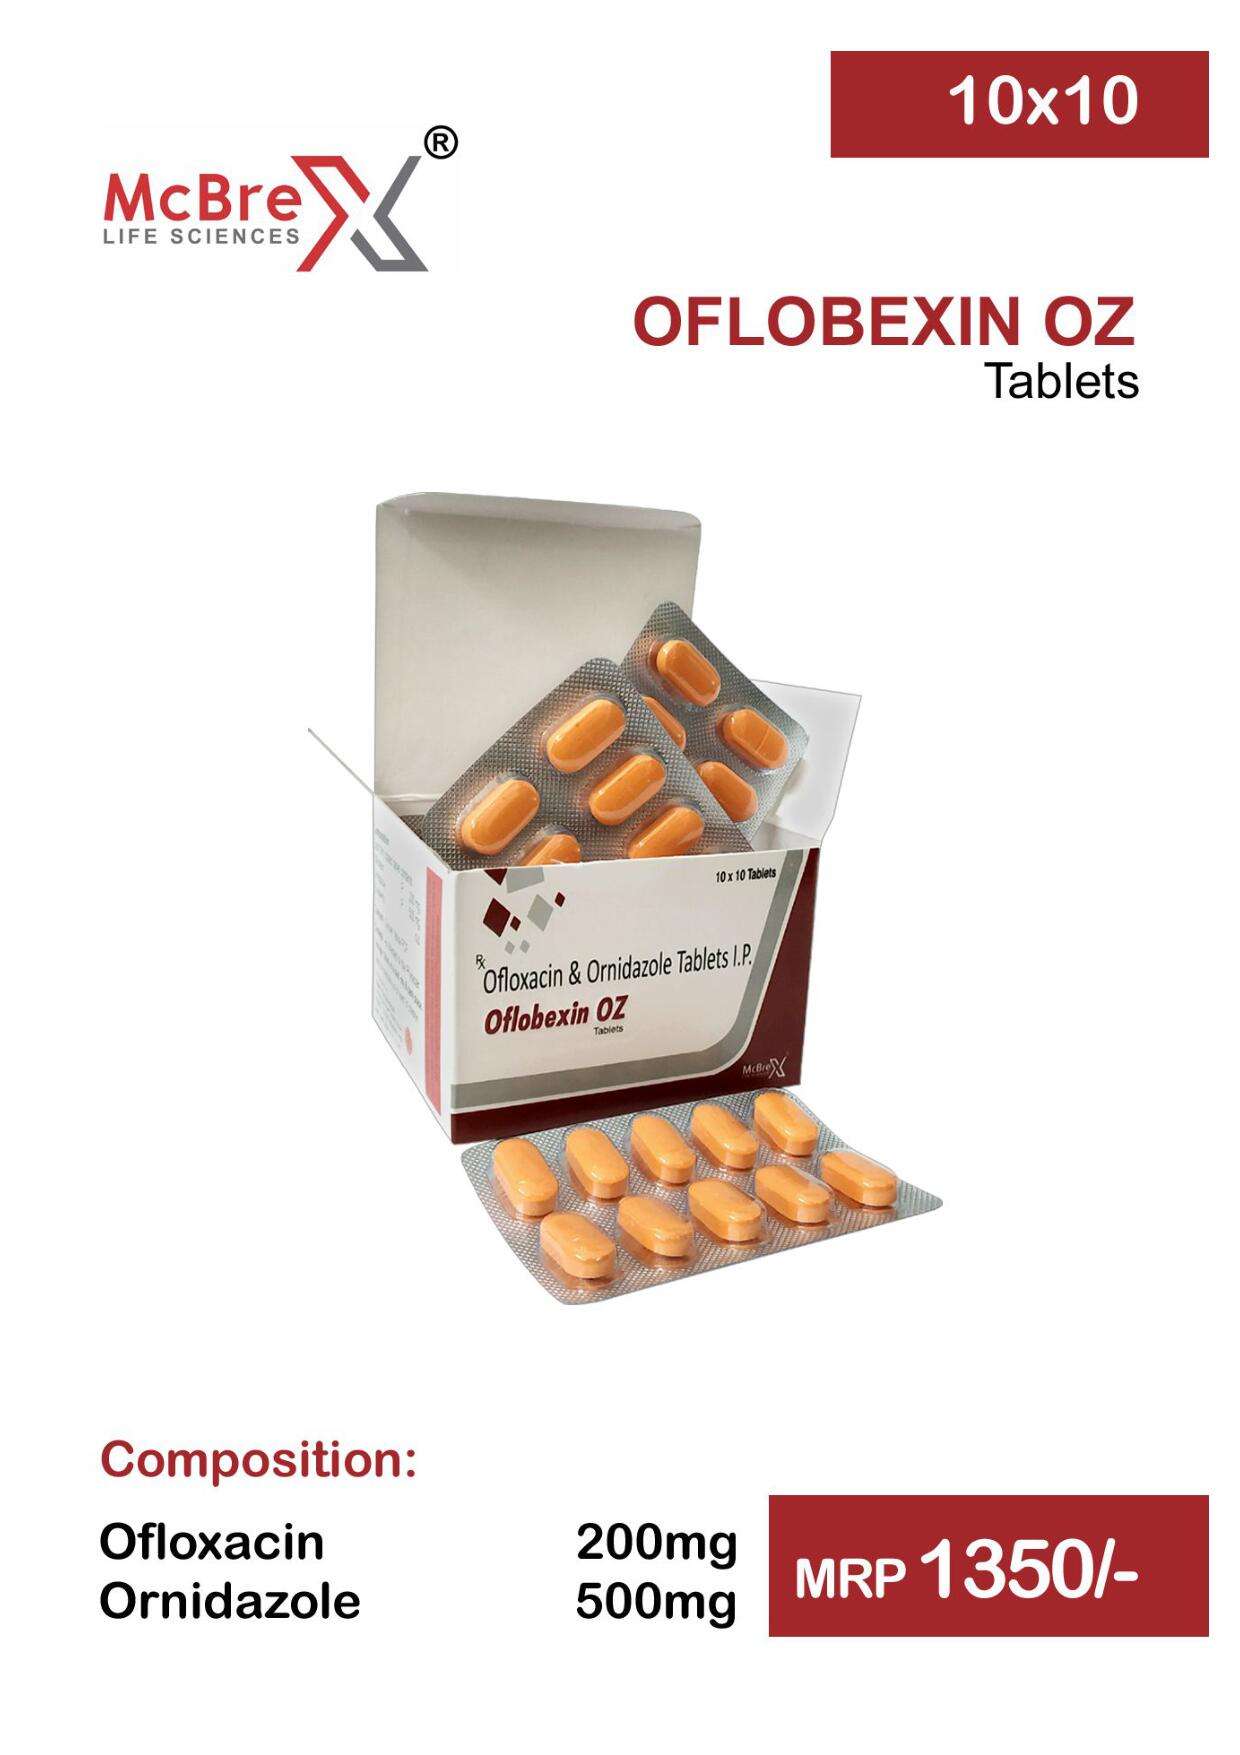 ofloxacin 200 mg.+ornidazole 500mg.